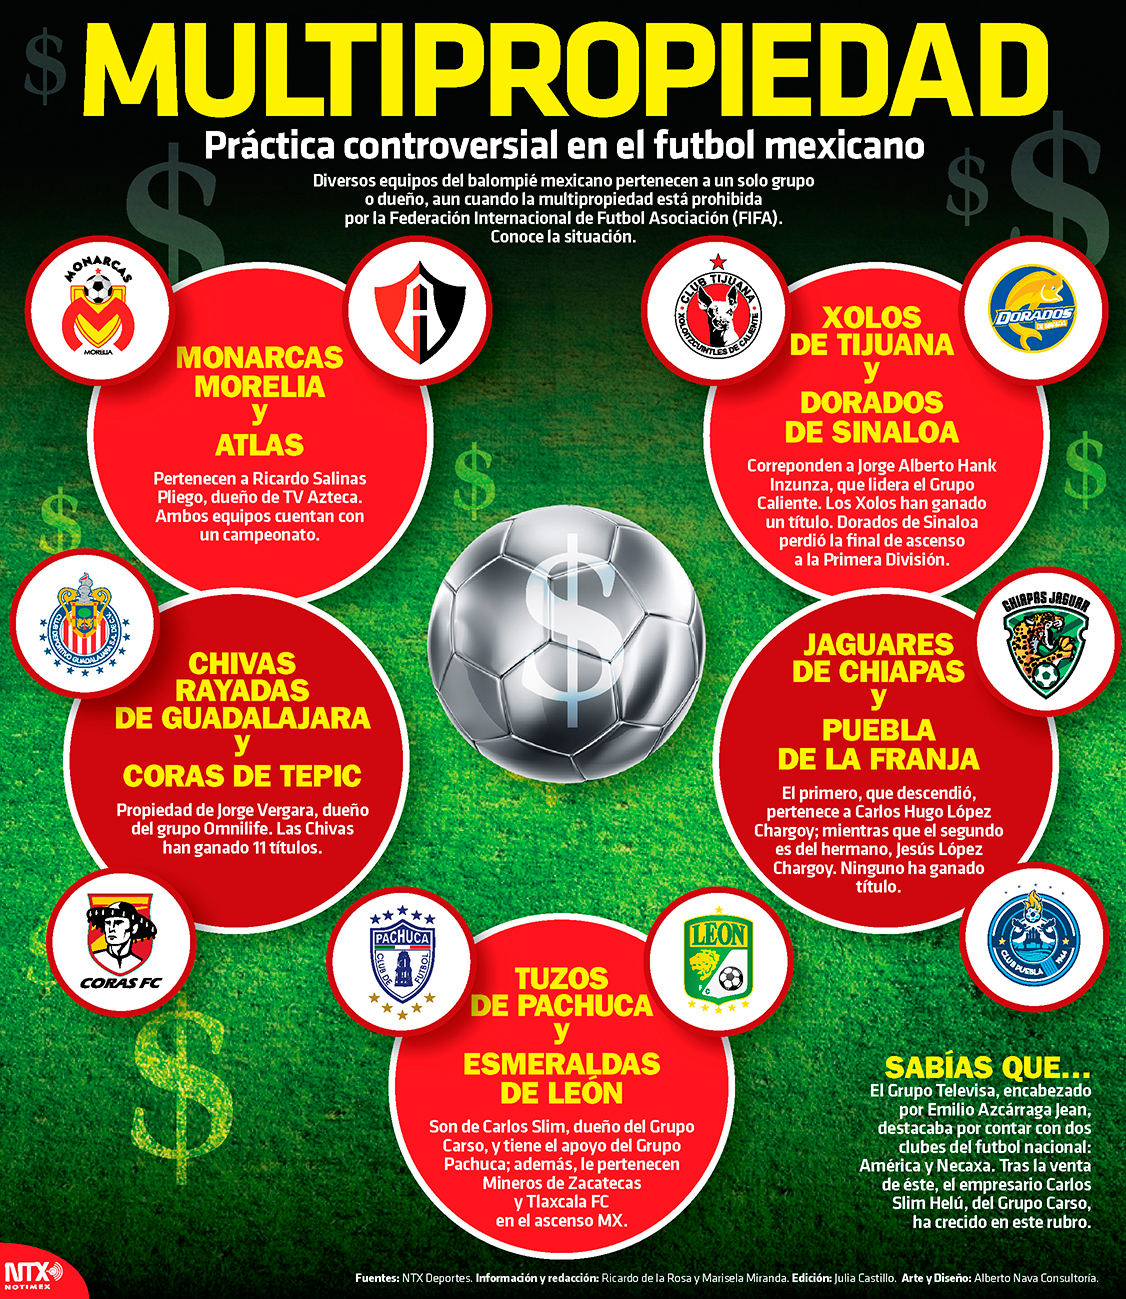 Multipropiedad, prctica controversial en el futbol mexicano